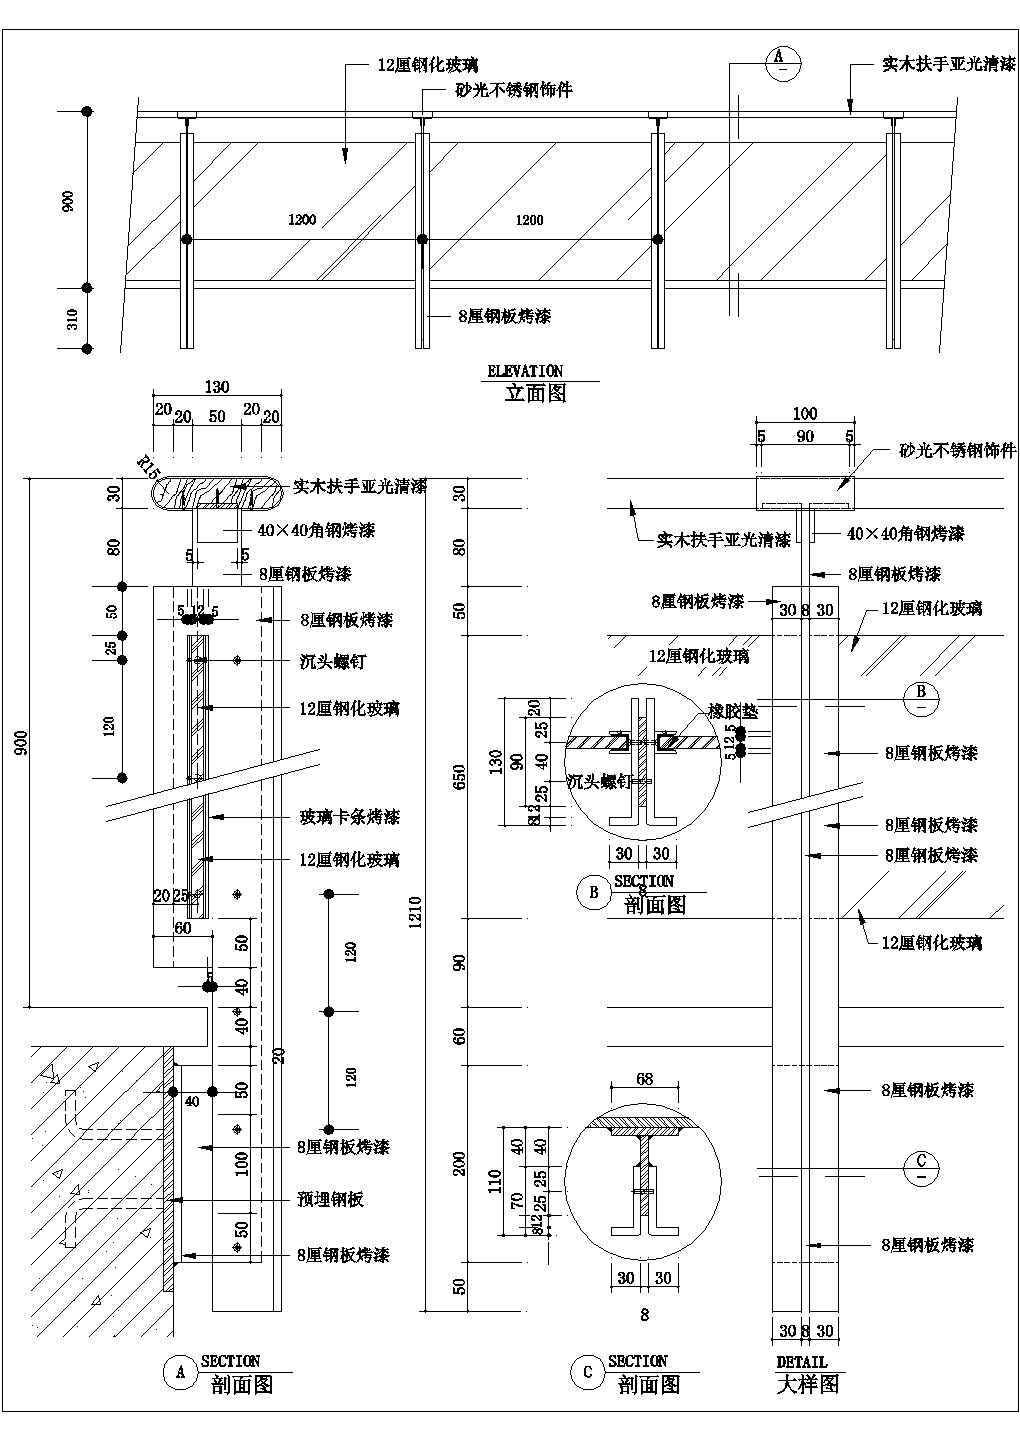 哈尔滨市某大型冰雪公园螺旋楼梯栏杆建筑设计CAD施工图